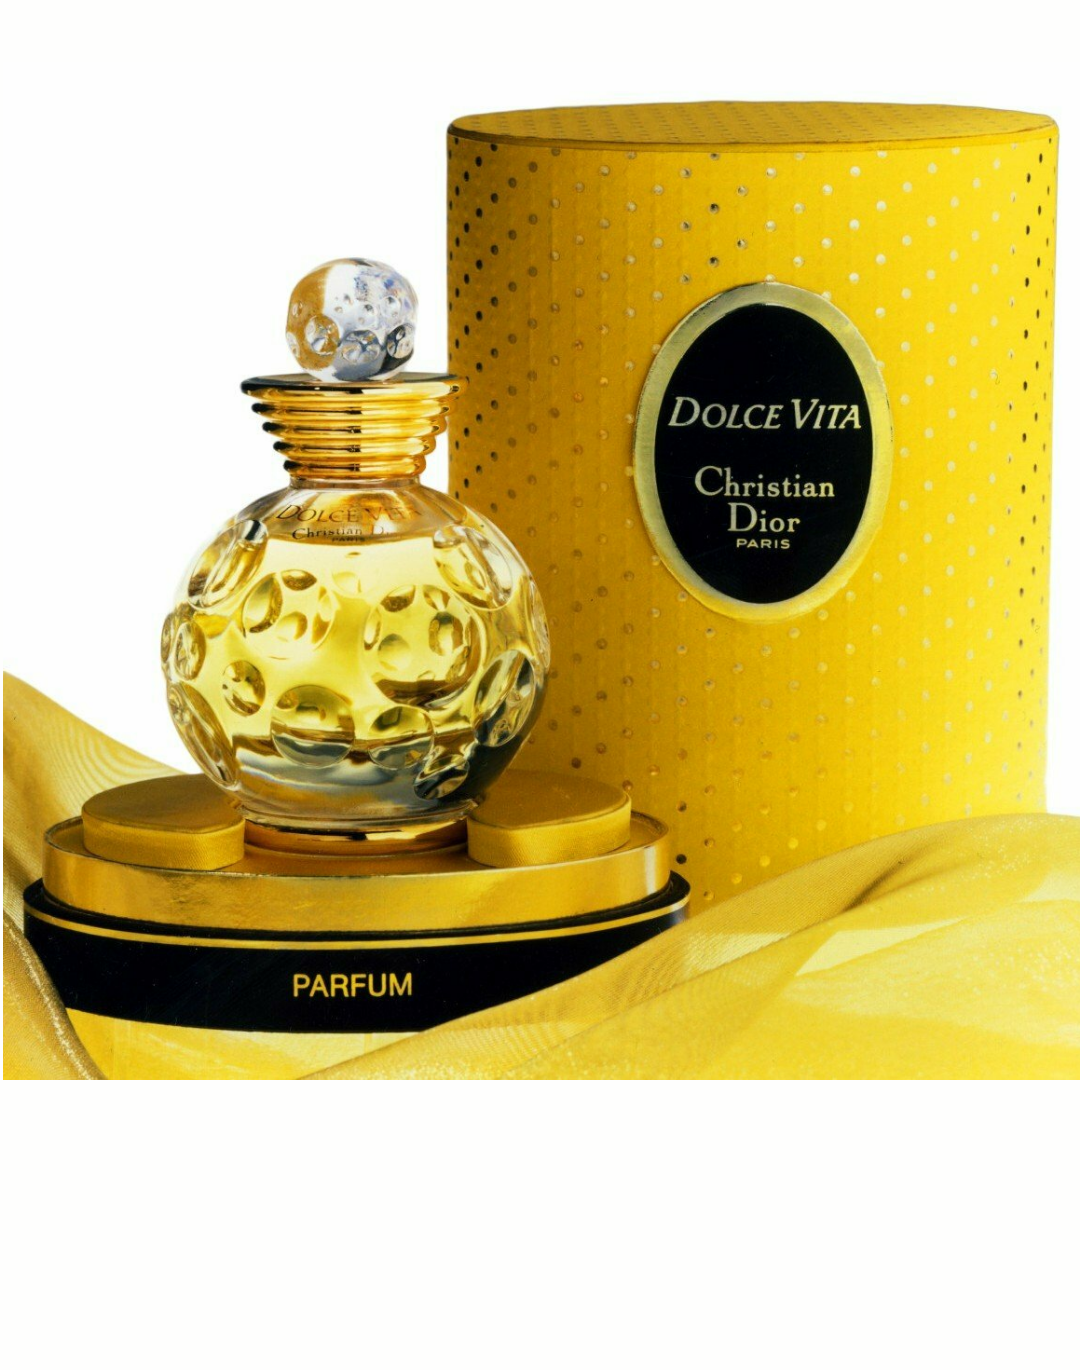 la dolce vita perfume by christian dior